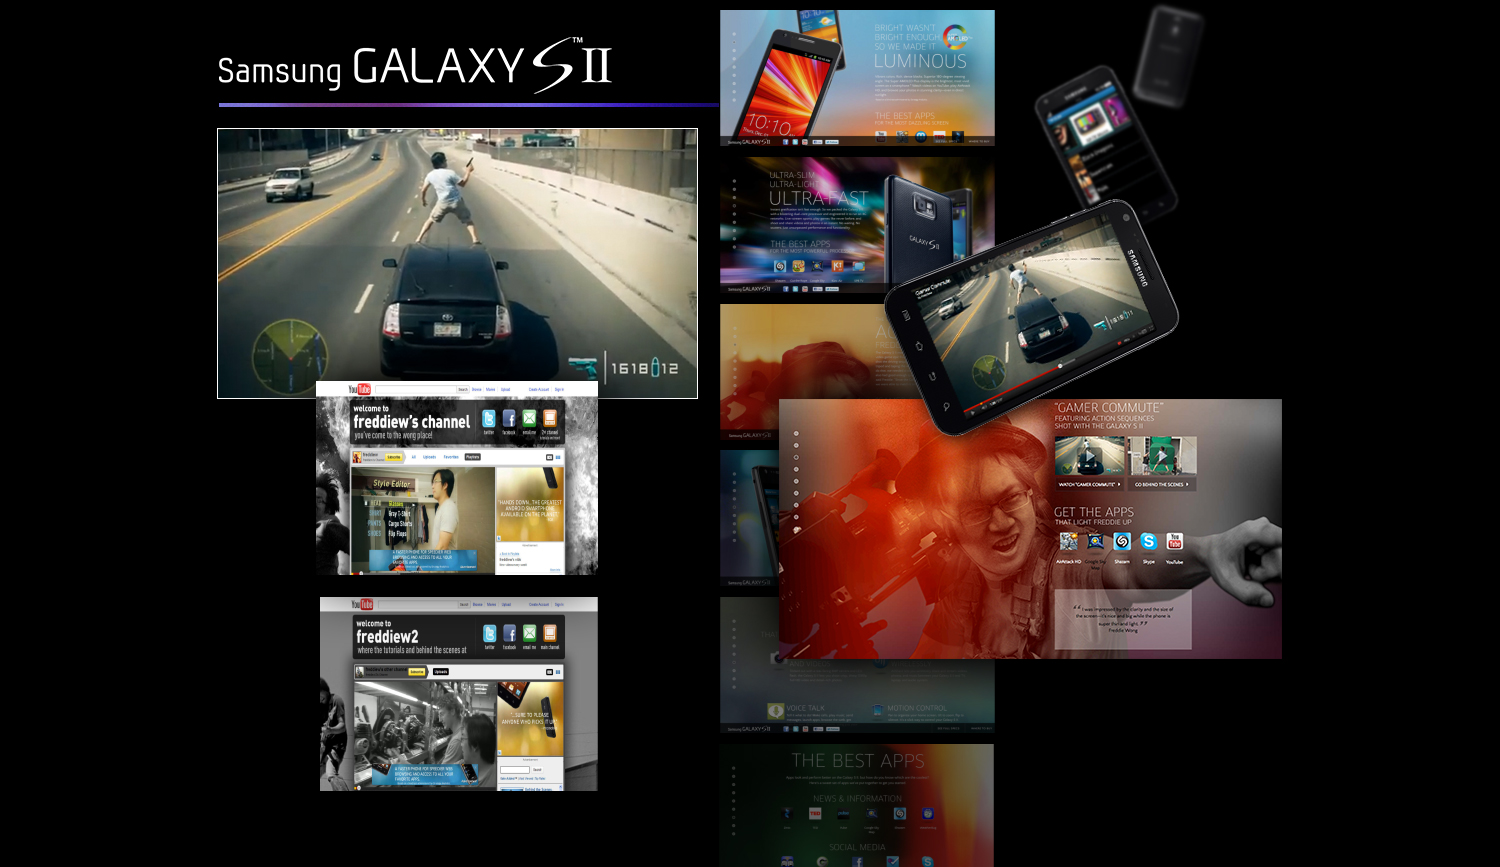 Samsung_GalaxySII_1.jpg